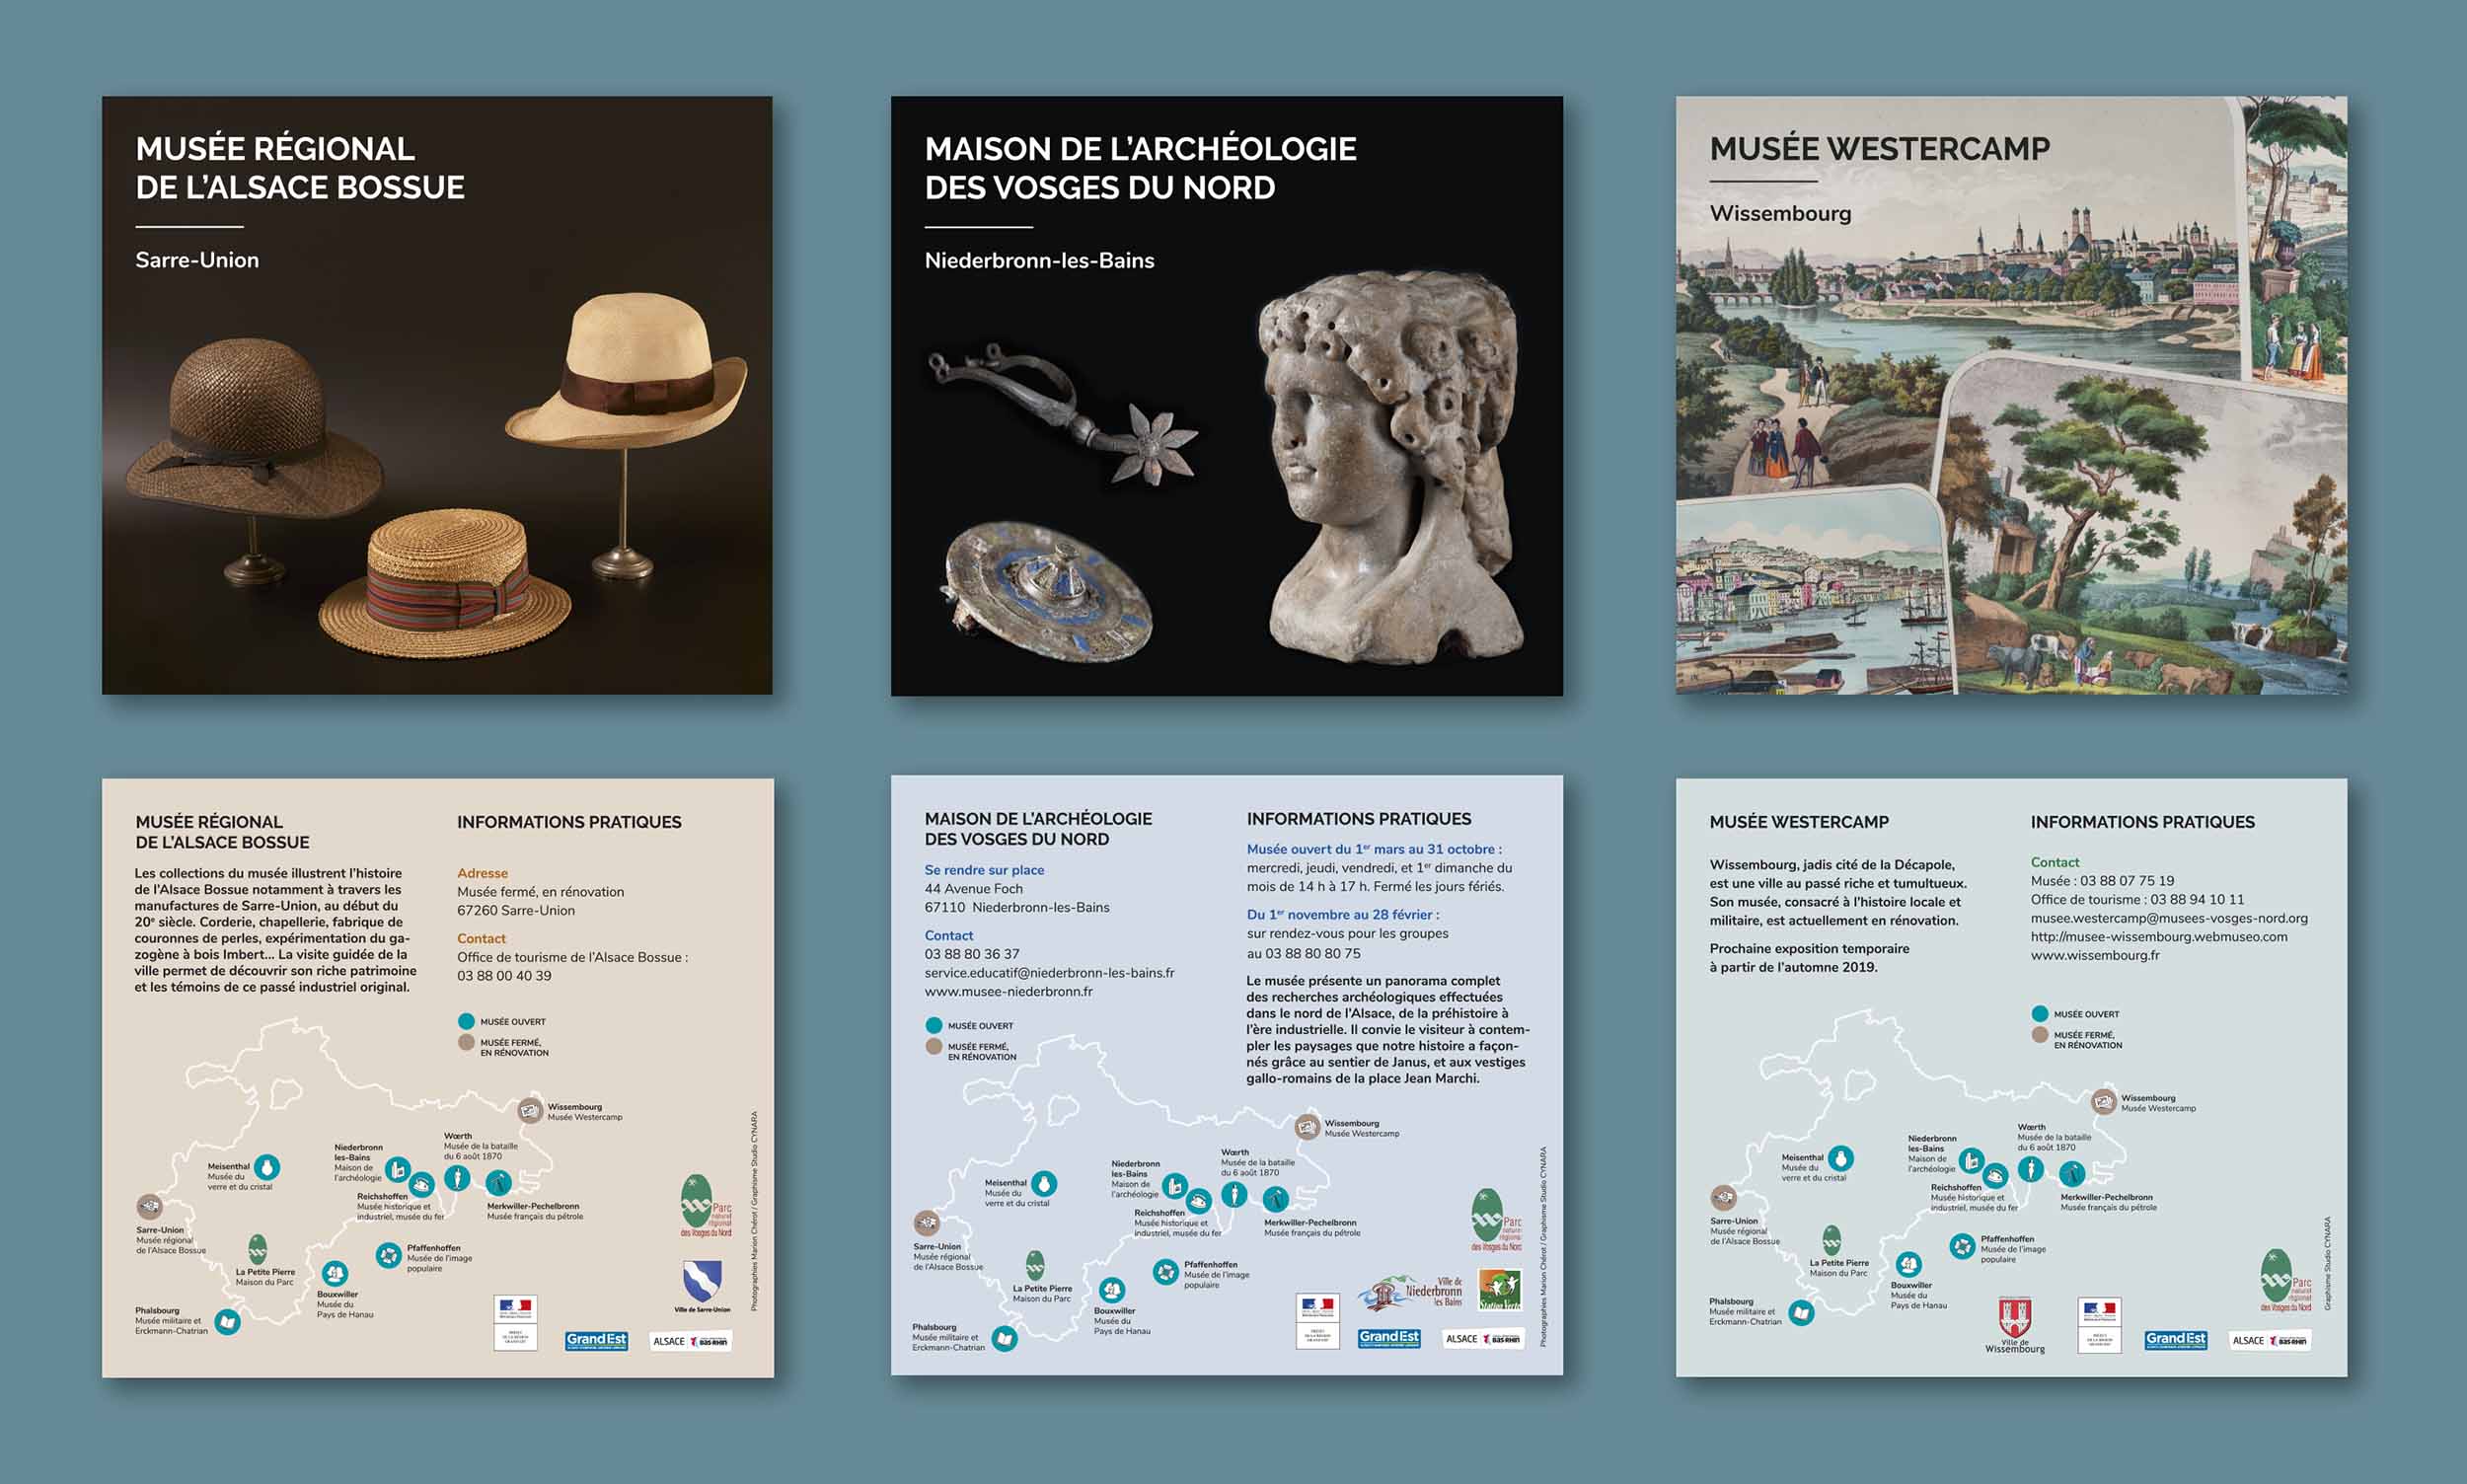 Aperçu des 3 flyers carrés créés pour présenter le Musée de l'Alsace-Bossue de Sarre-Union, la Maison de l'Archéologie de Niederbronn-les-Bains, et le Musée Westercamp de Wissembourg. Images de leurs collections et informations pratiques.